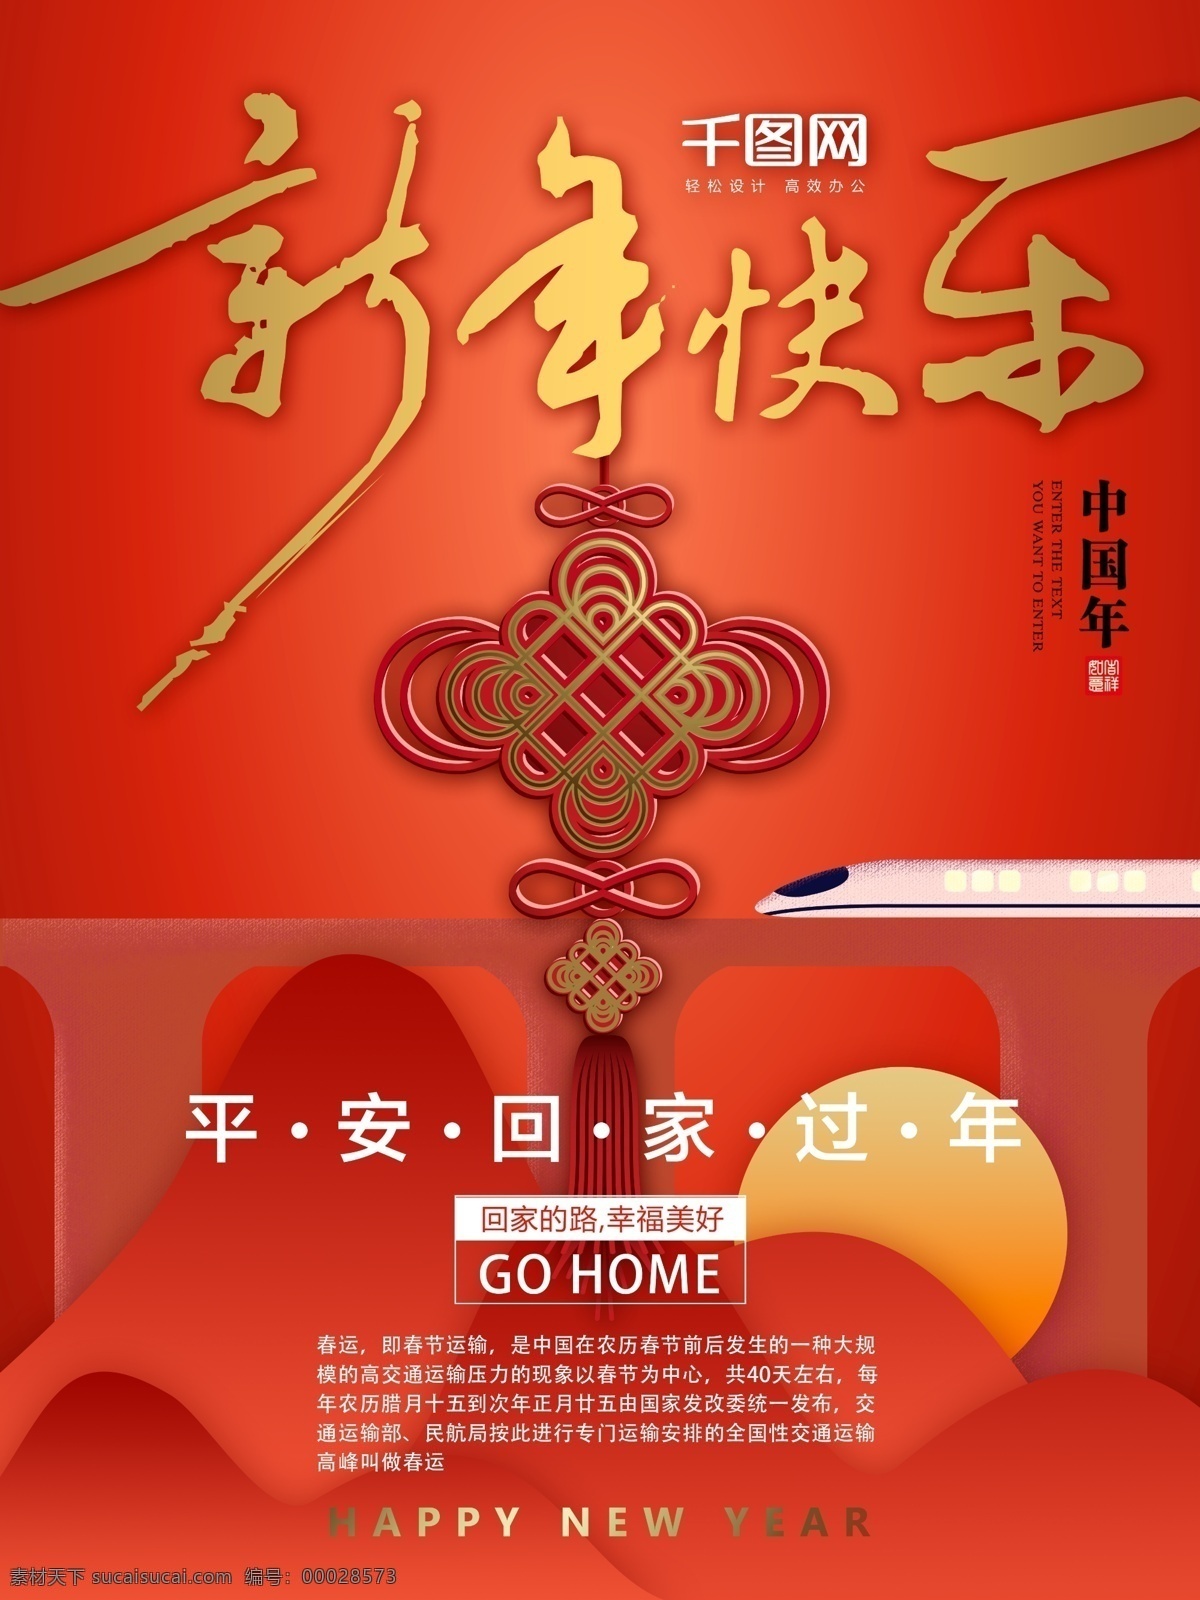 新年 快乐 高铁 回家 过年 红色 喜庆 海报 回家过年 新年快乐 中国结